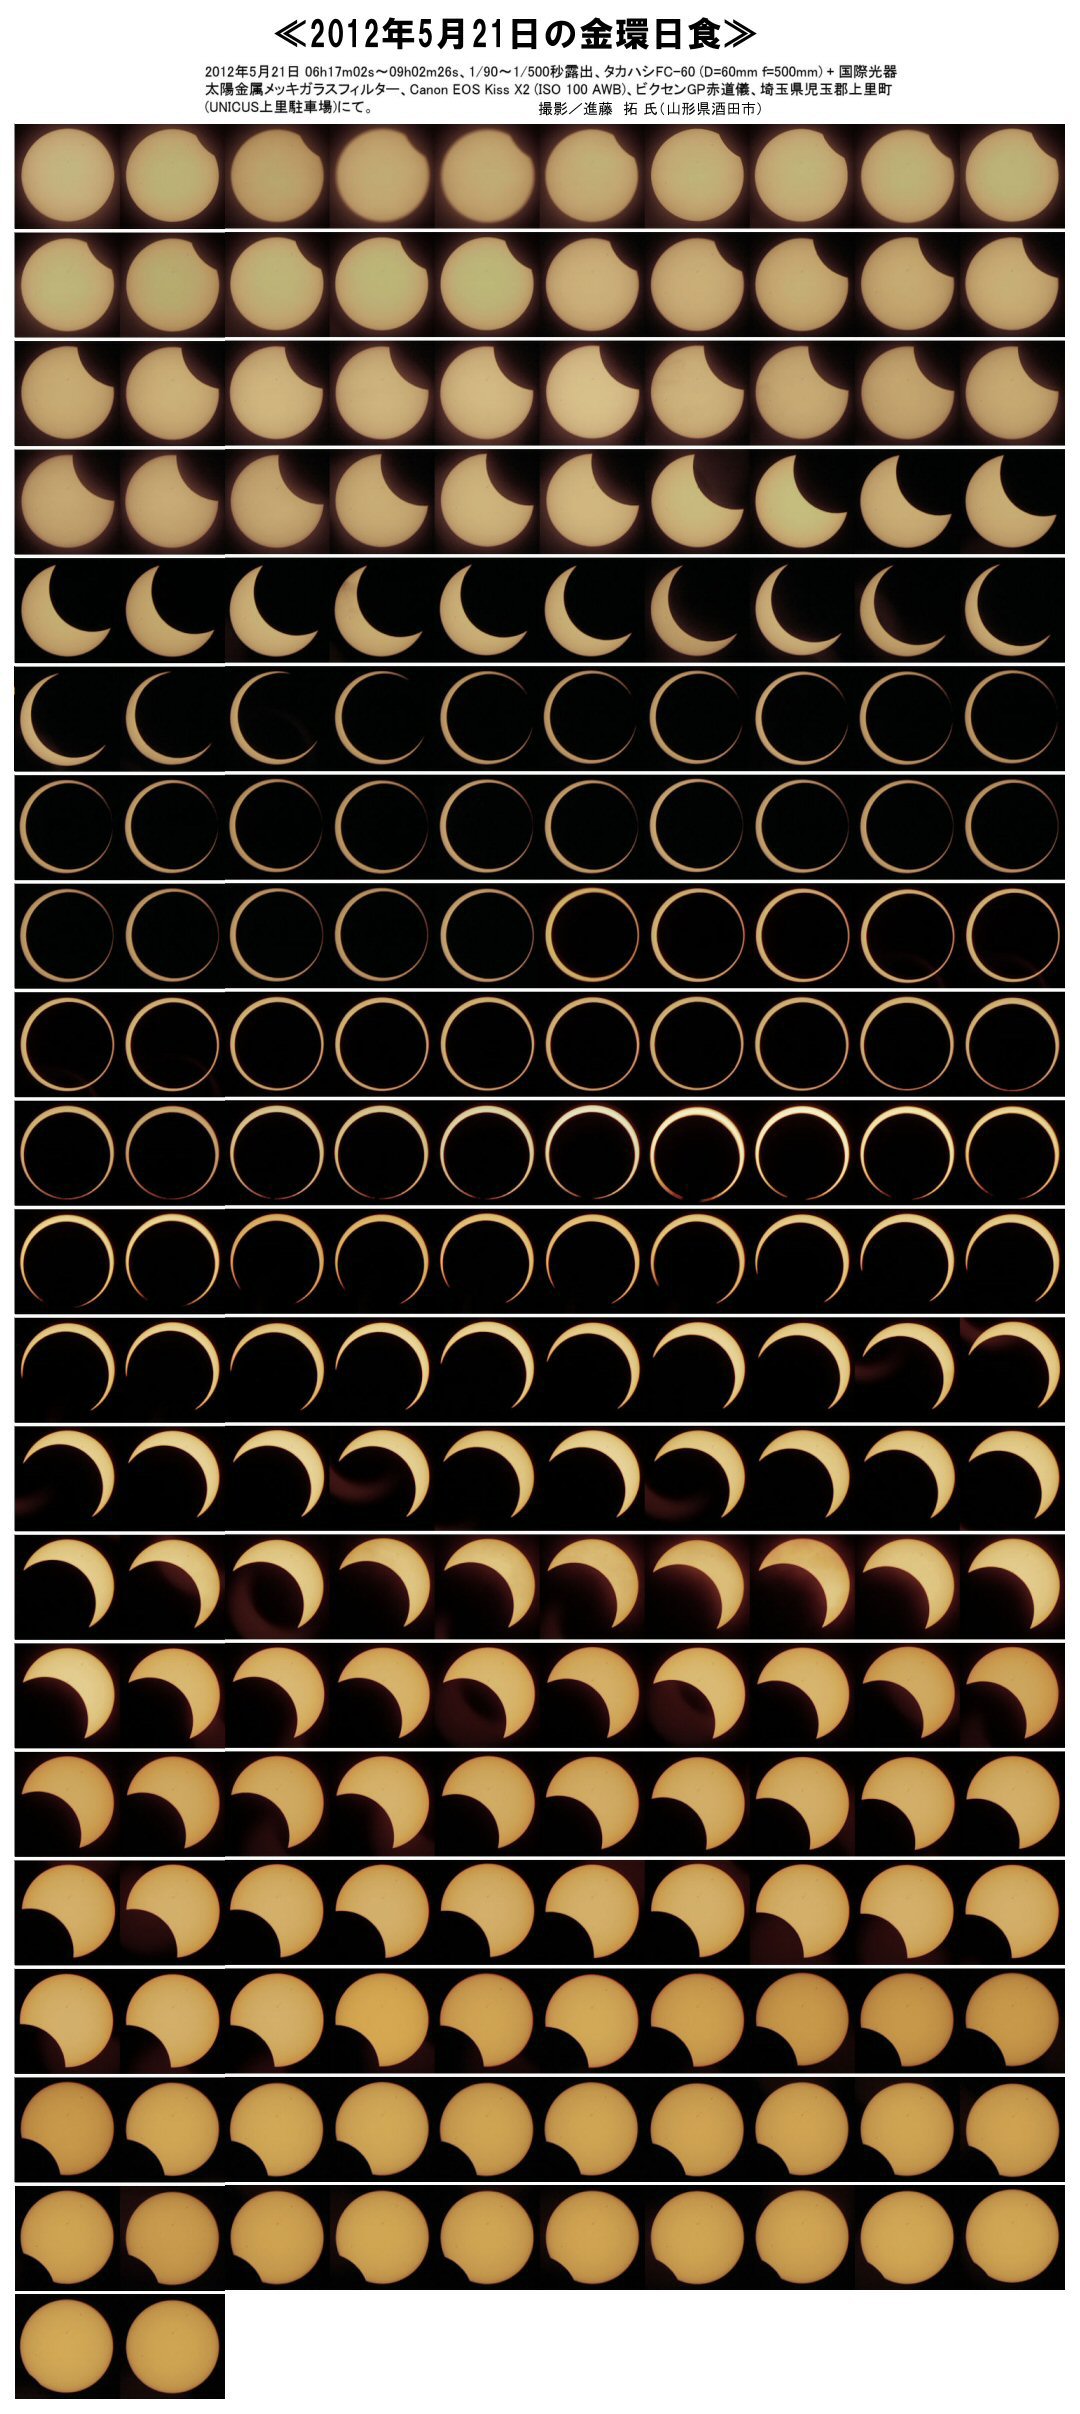 2012年5月21日の金環日食